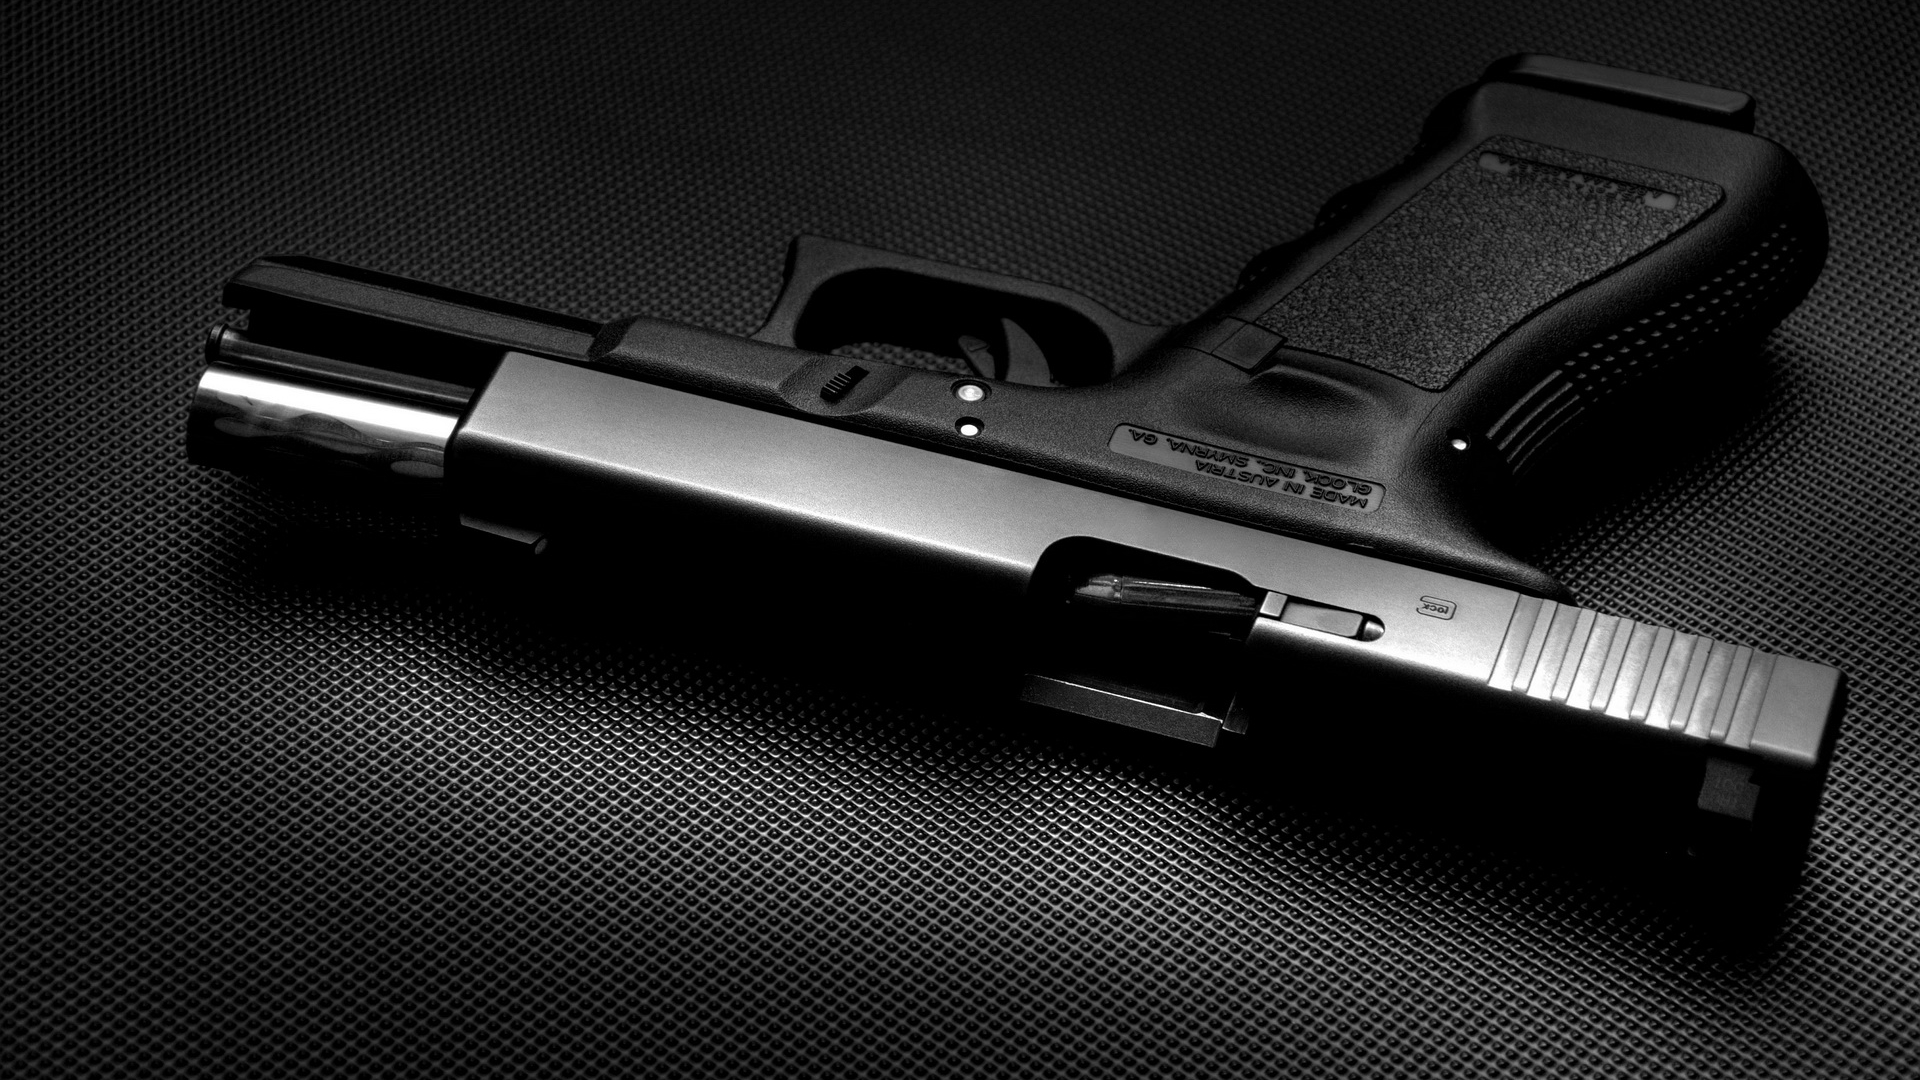 General 1920x1080 weapon gun monochrome Glock pistol Austrian firearms